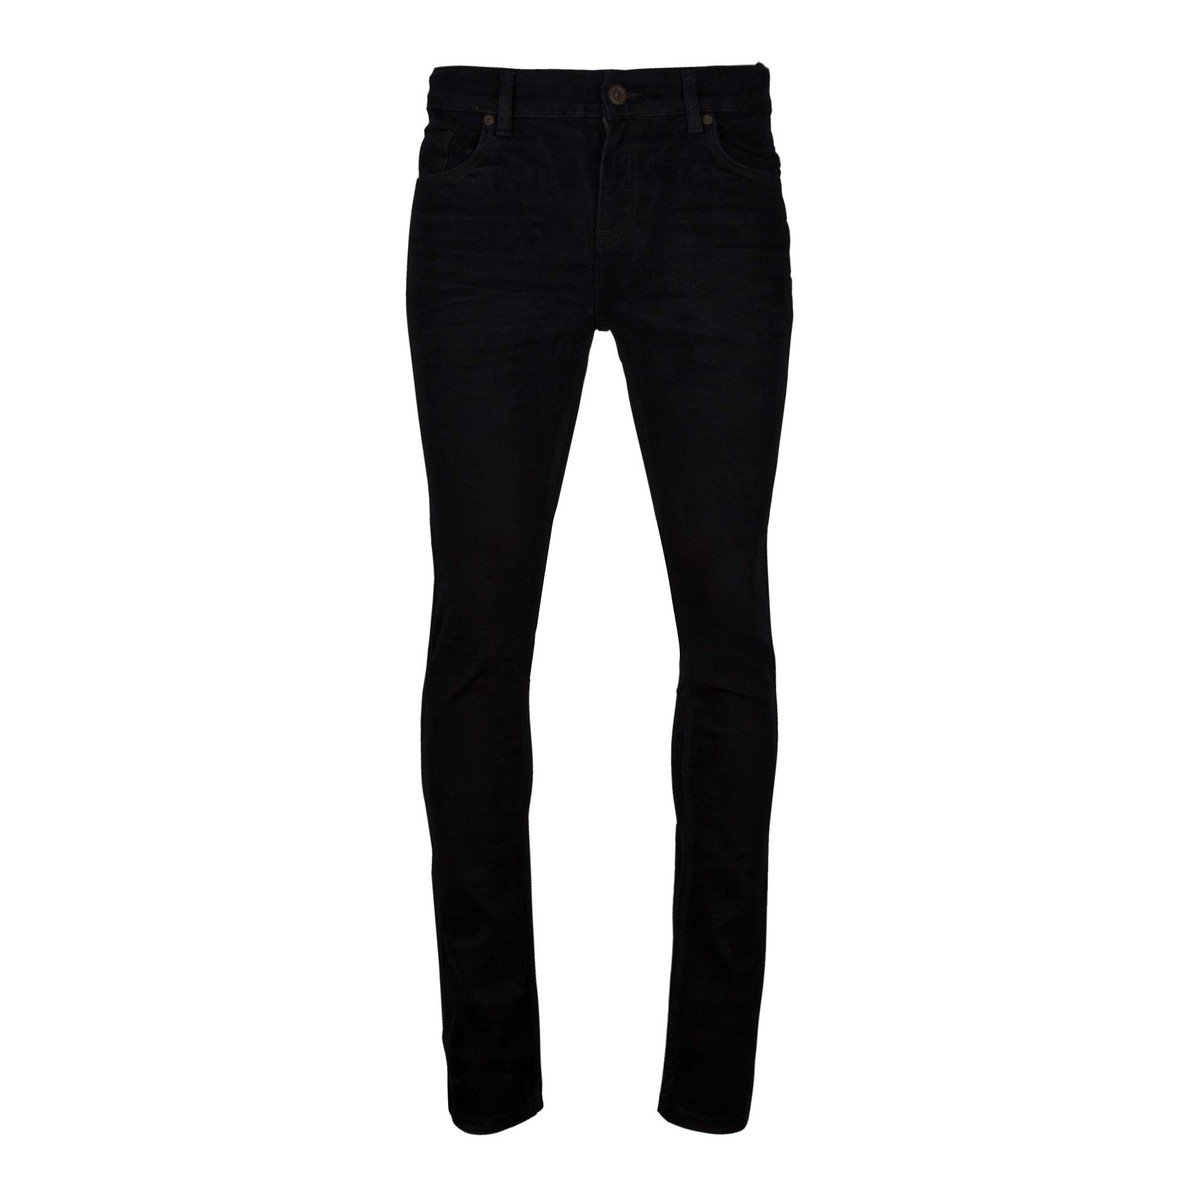 Marco Donateli Men's Jeans KA016 Black 38 Online at Best Price | Skinny ...